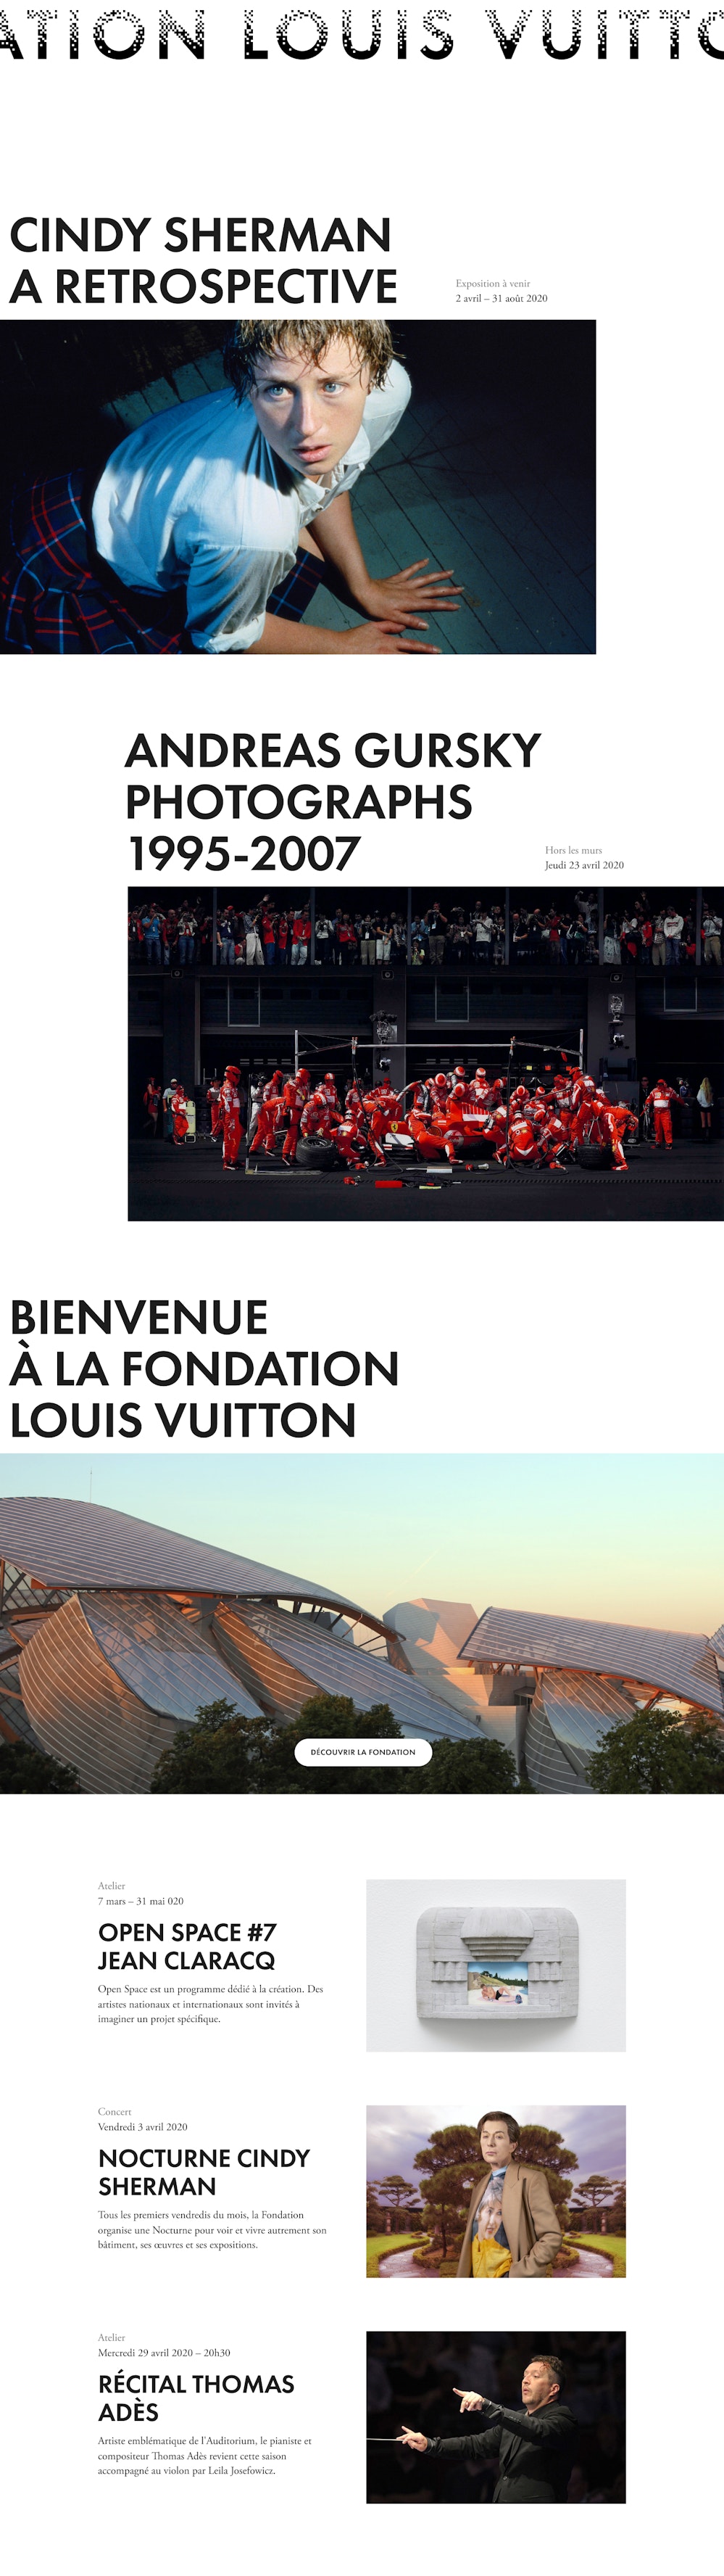 Discover the Fondation Louis Vuitton